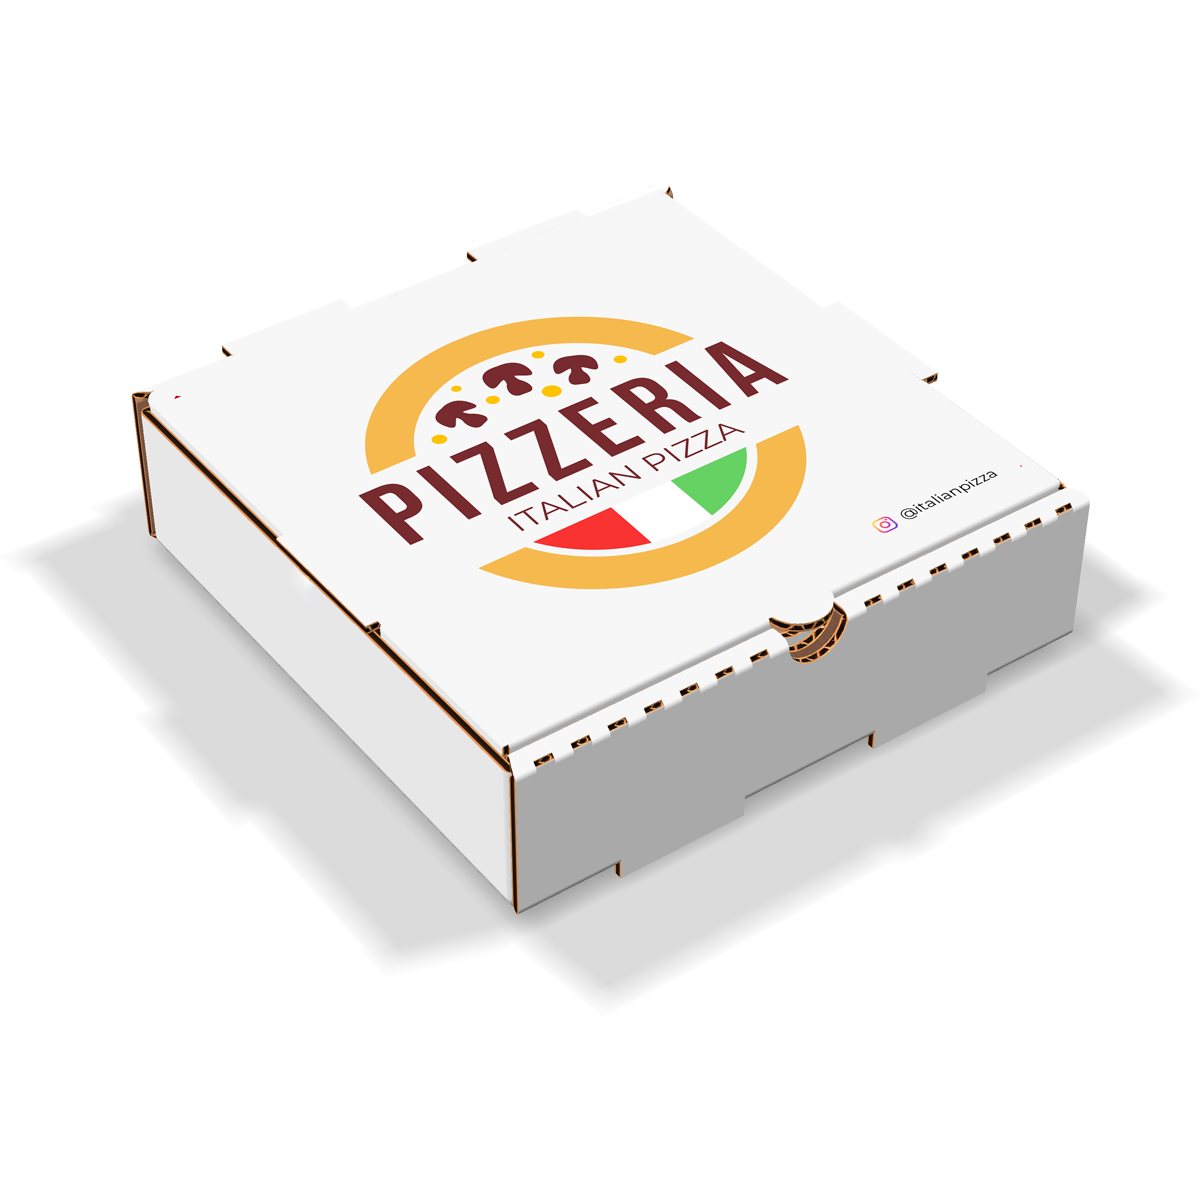 pizza box design